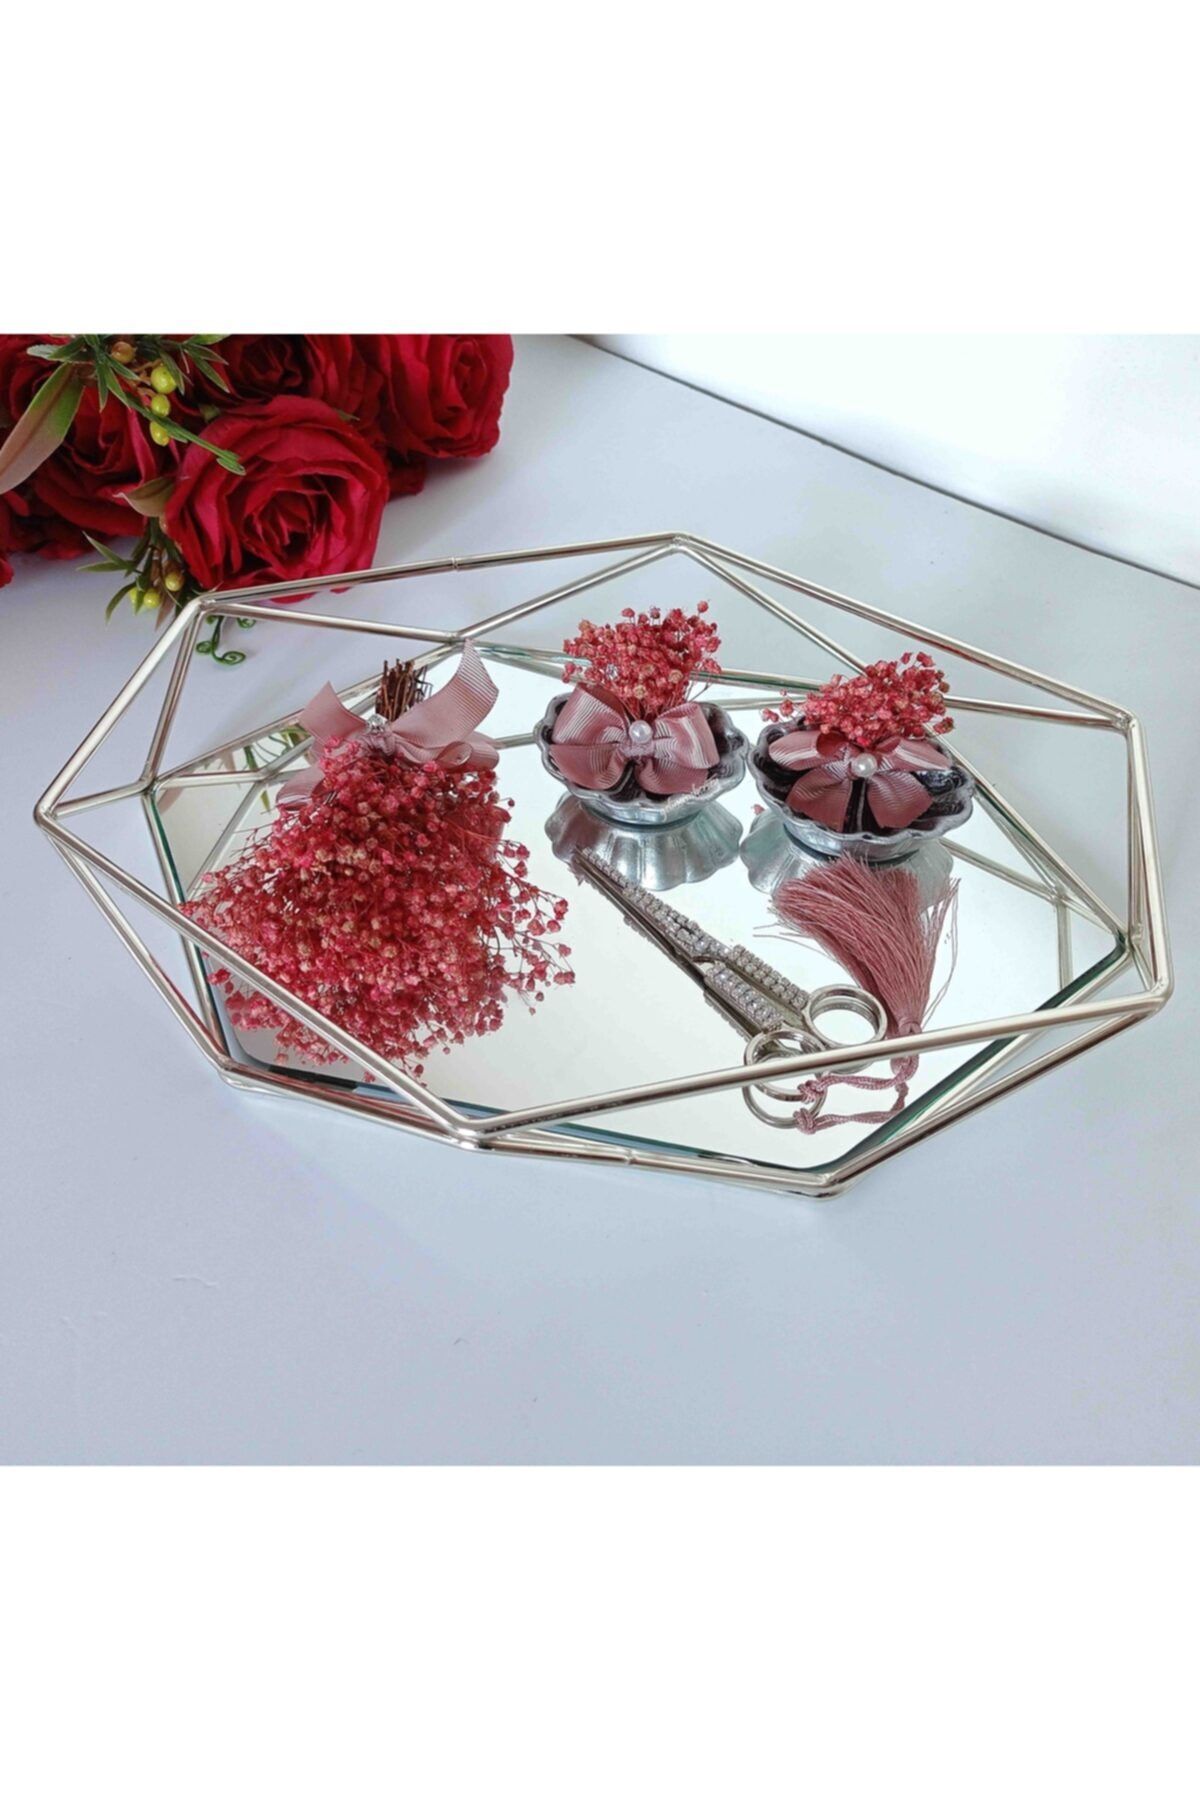 Gelincimherşey Prizma Aynalı Şoklanmış Çiçek Süslemeli Pudra Gümüş Söz Nişan Yüzük Tepsi Seti